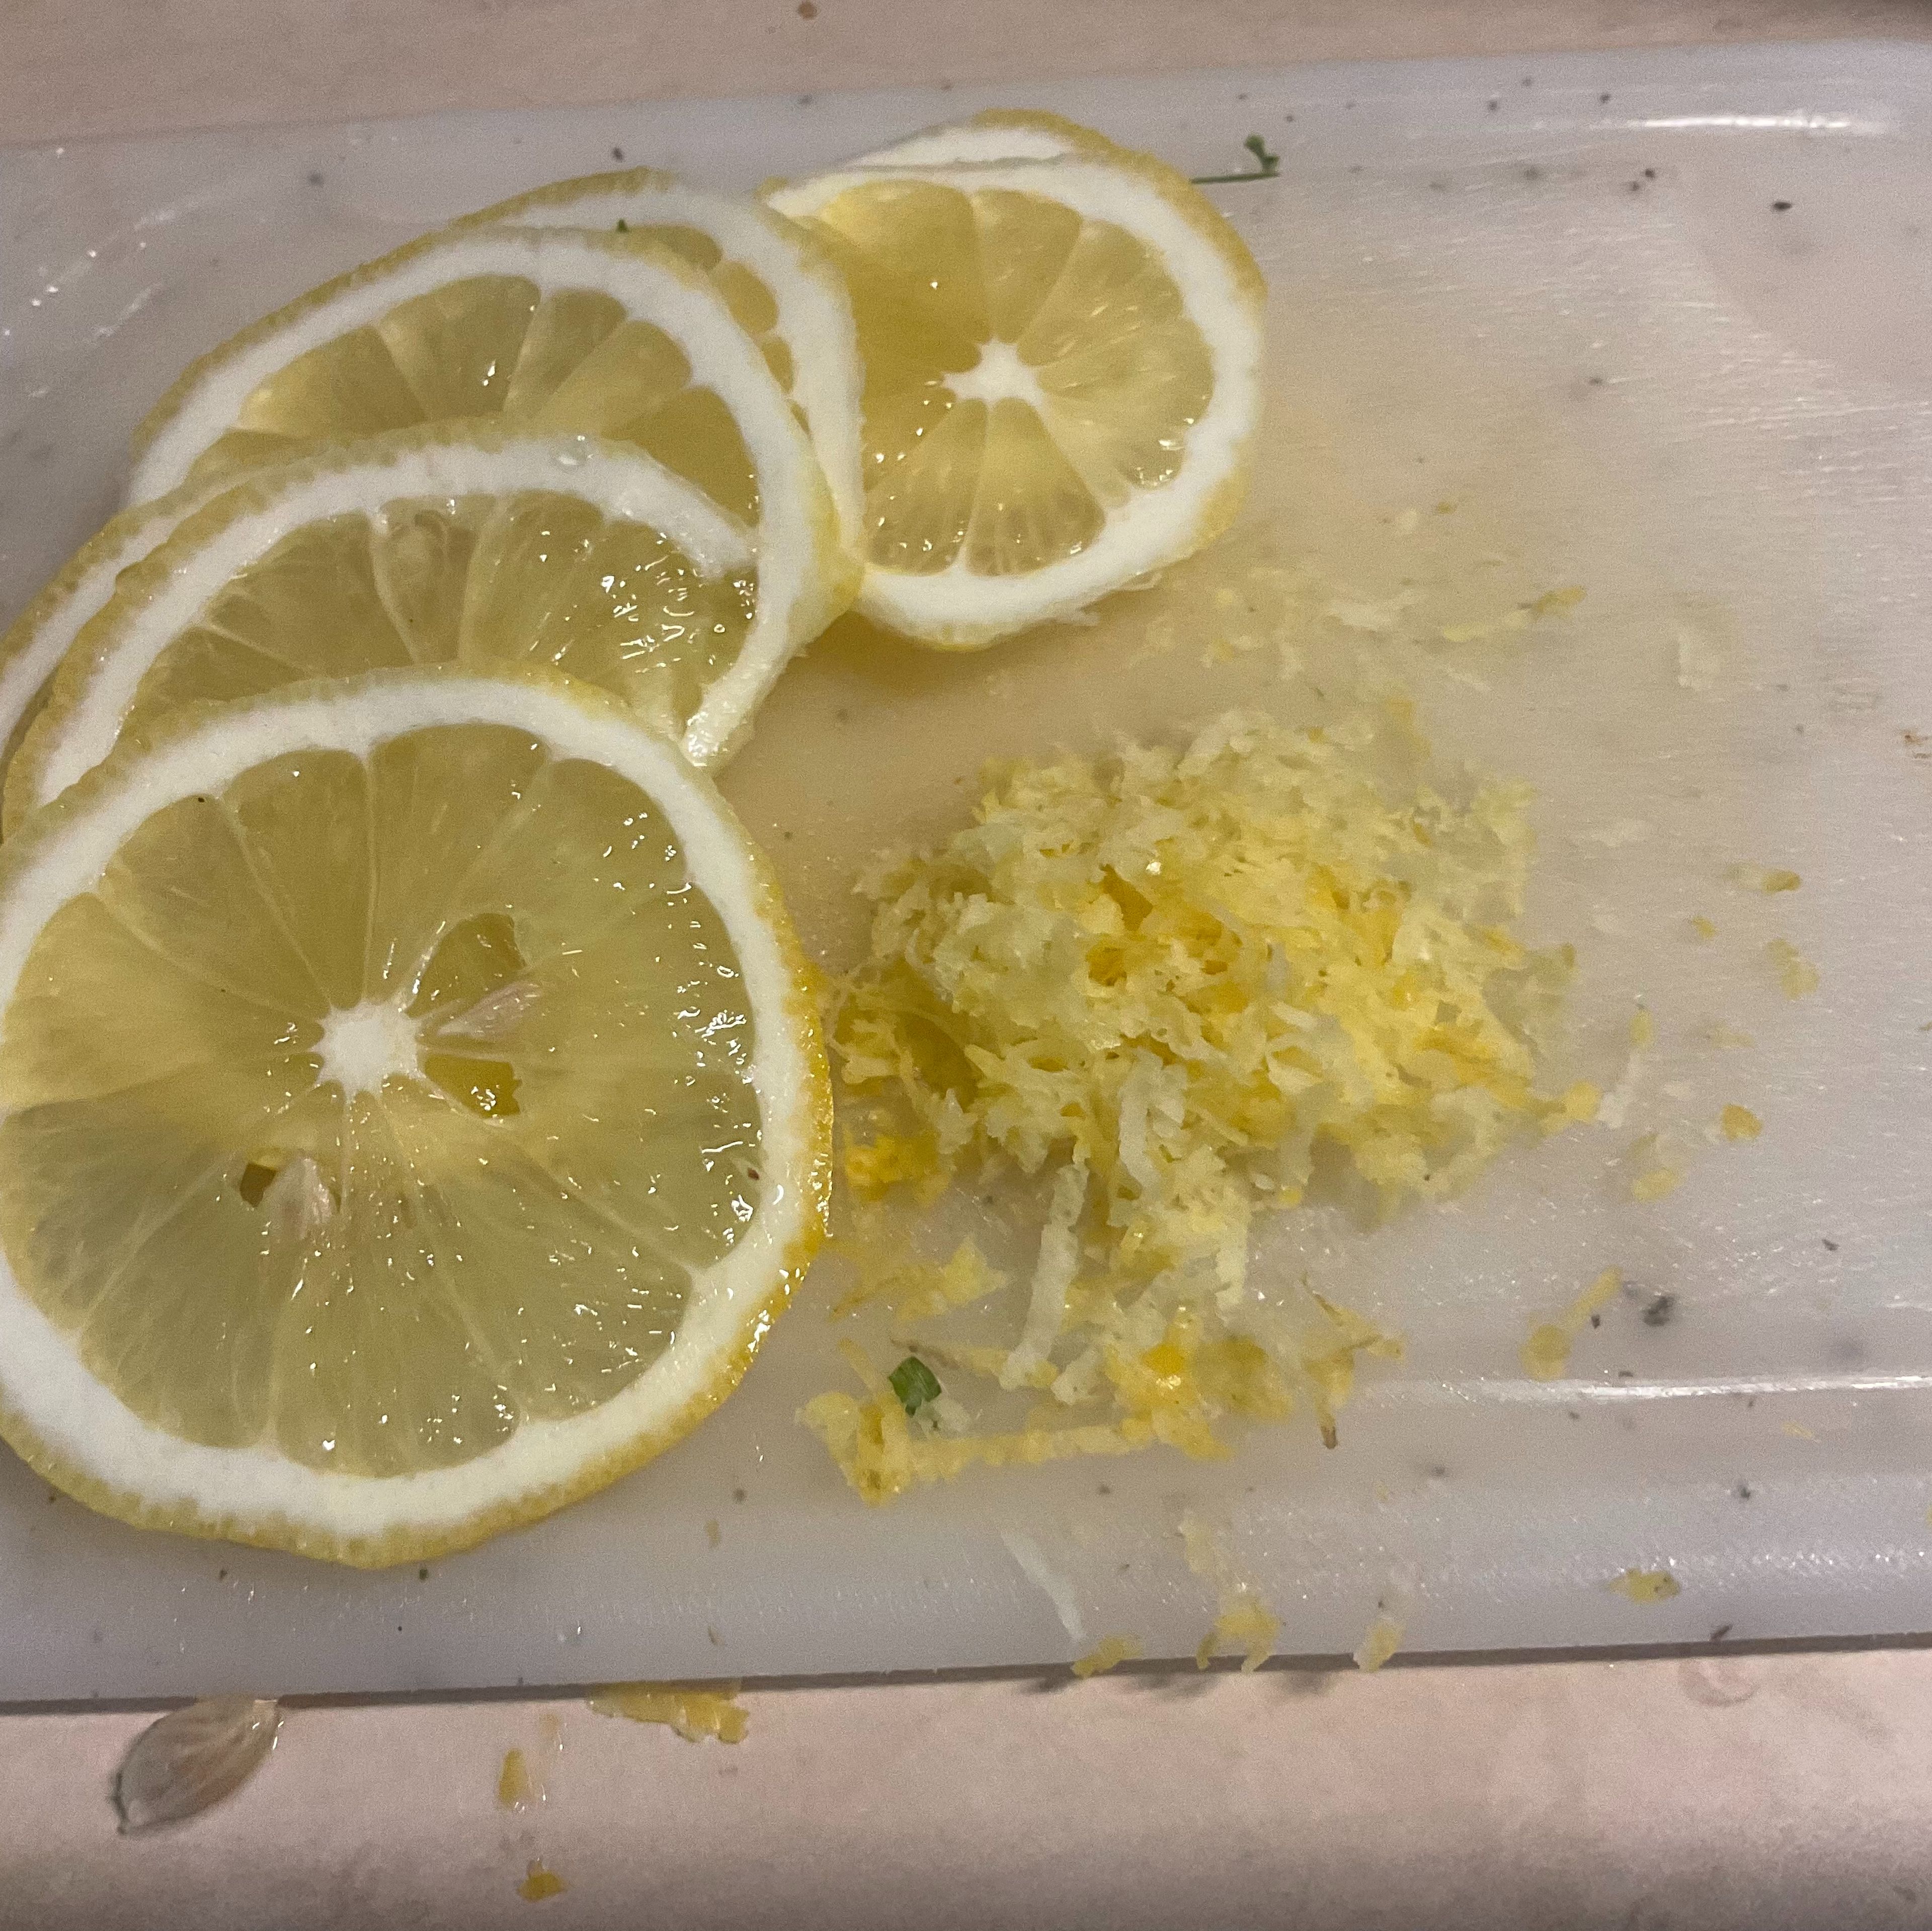 Eine Zitrone halbieren, deren Saft brauche ich später für das Pulpogelee. Eine viertel Zitrone ungepritzt (Bio) mittels einer Reibe nen Zitronenabrieb herstellen, die andere Hälfte in feine Zitronenscheiben schneiden um das Carpaccio später zu garnieren.